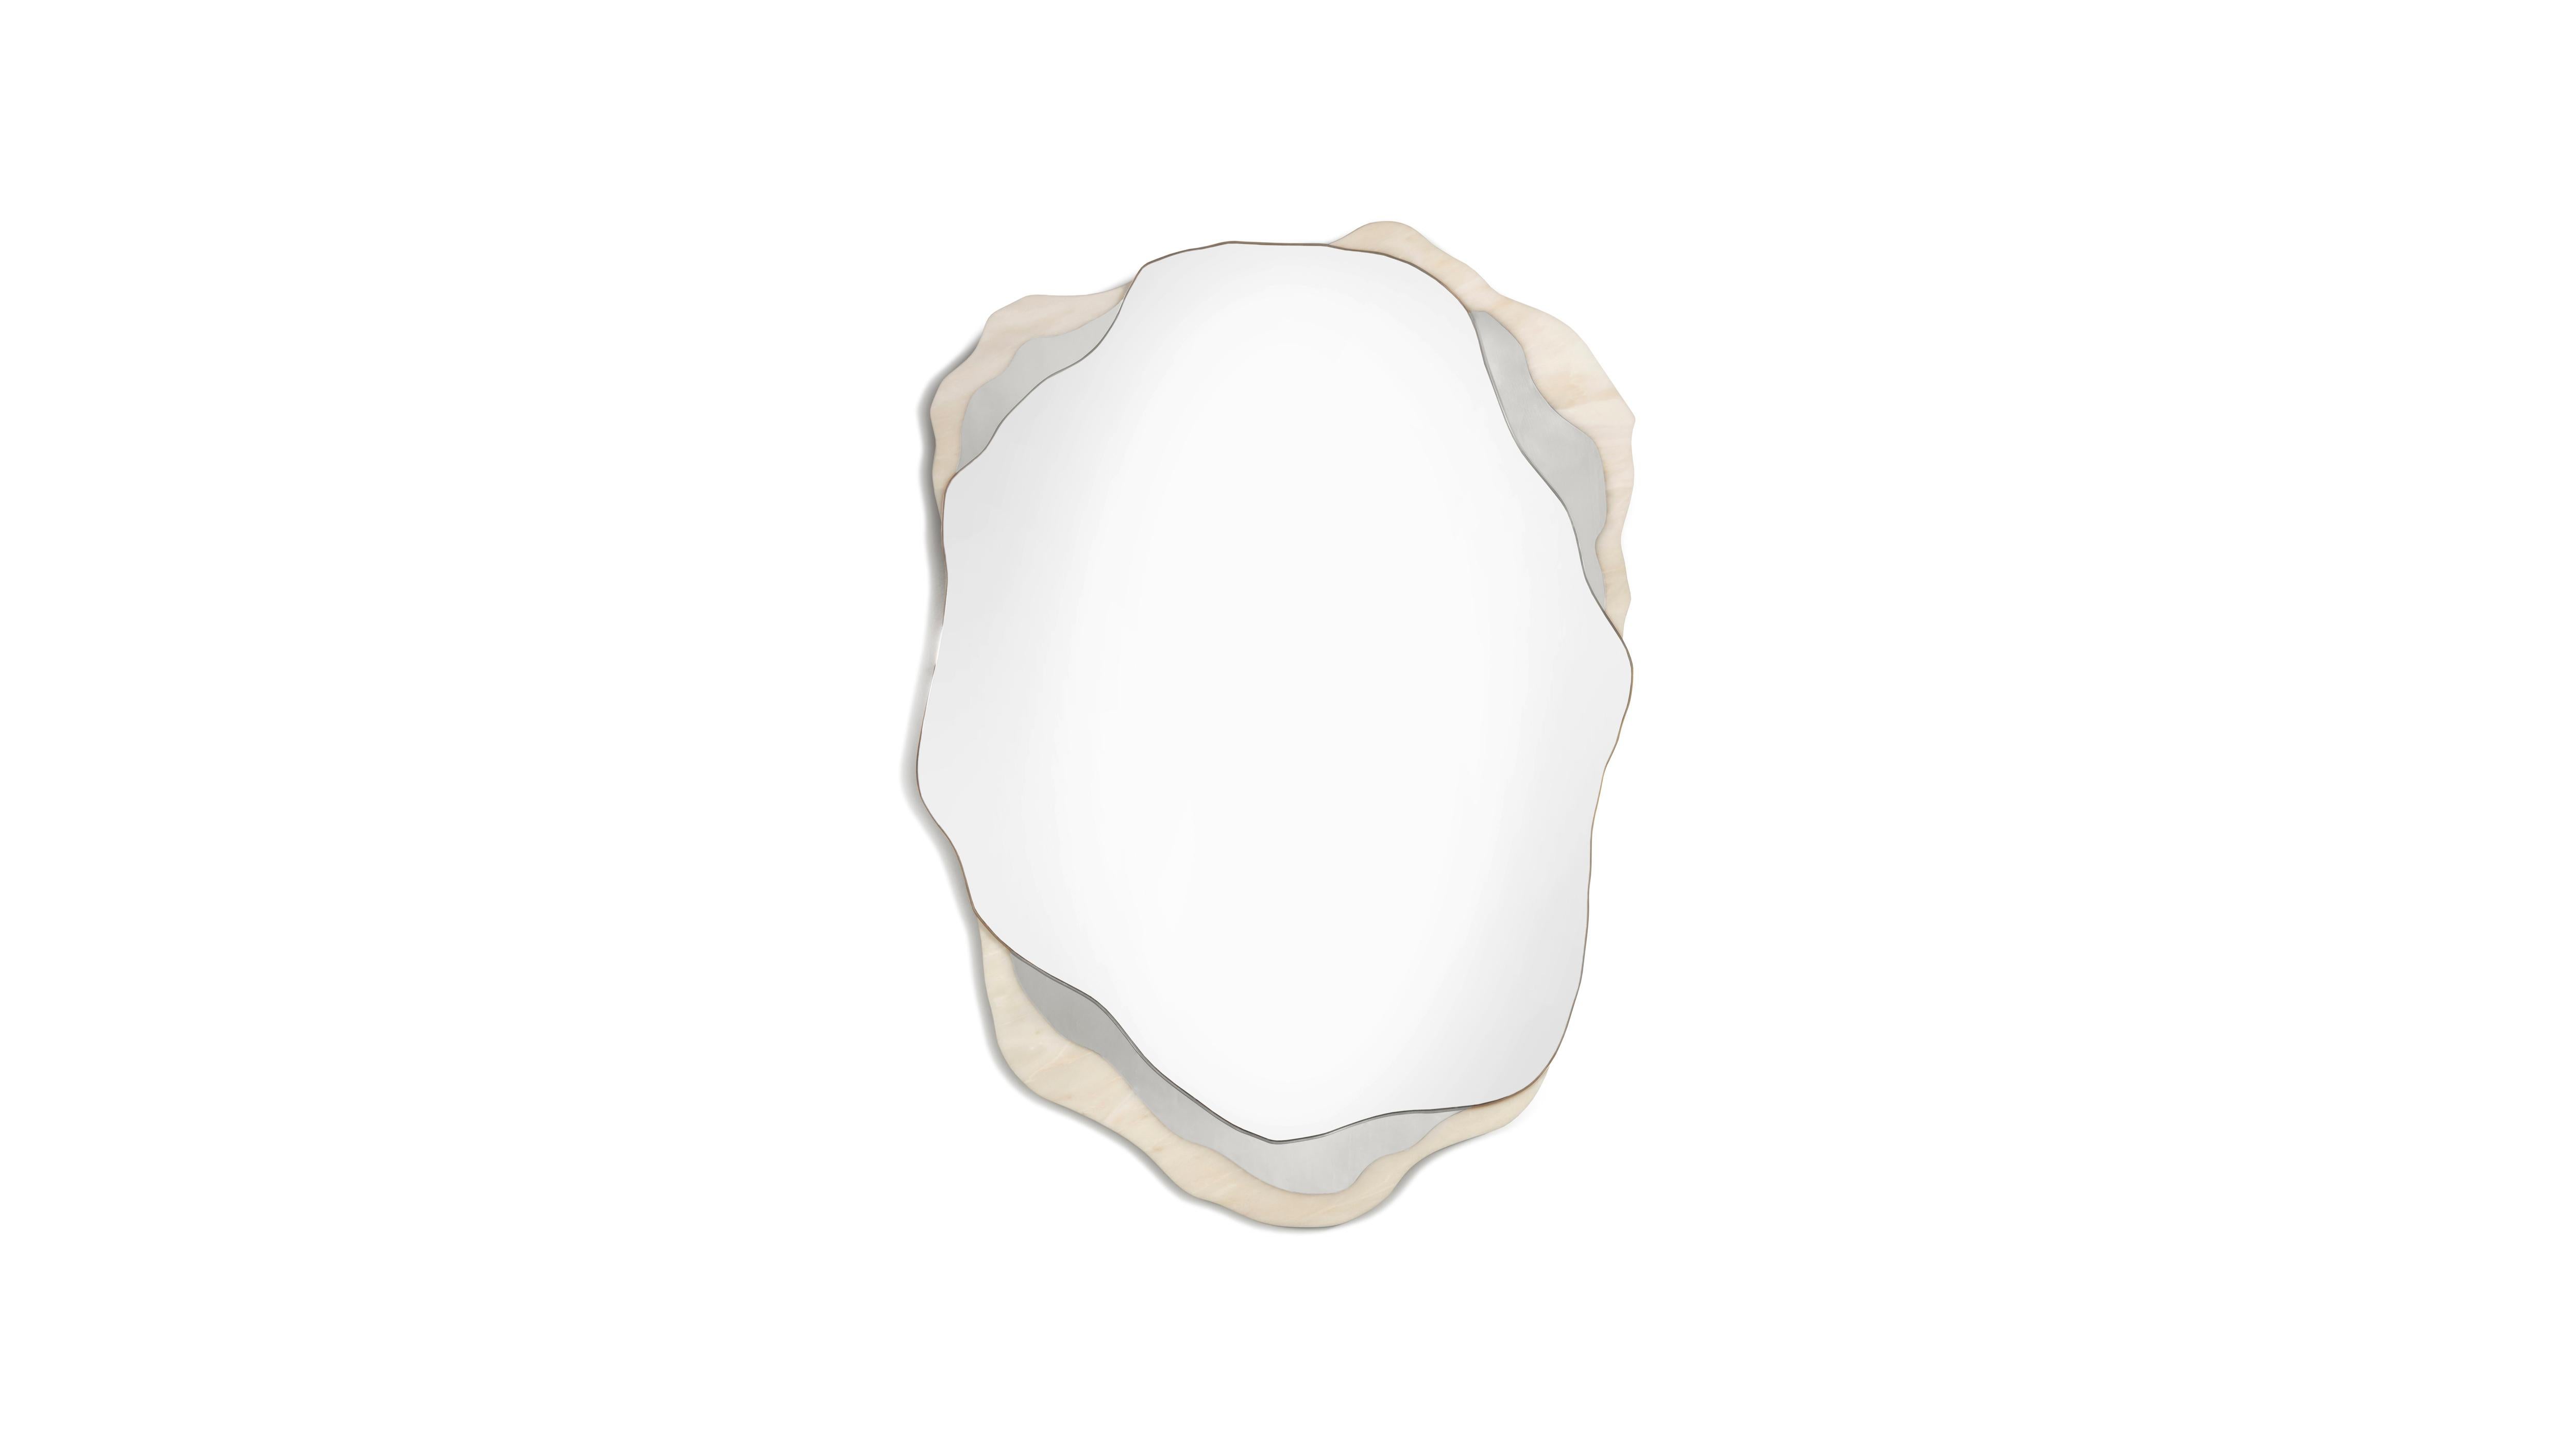 Estremoz-Marmorspiegel von InsidherLand, Arizona
Abmessungen: T 4 x B 84 x H 115 cm.
MATERIALIEN: Estremoz-Marmor, poliertes Nickel, klarer Spiegel.
46 kg.
Erhältlich in anderen Ausführungen.

In der abgelegenen Gegend der Coyote Buttes liegt einer